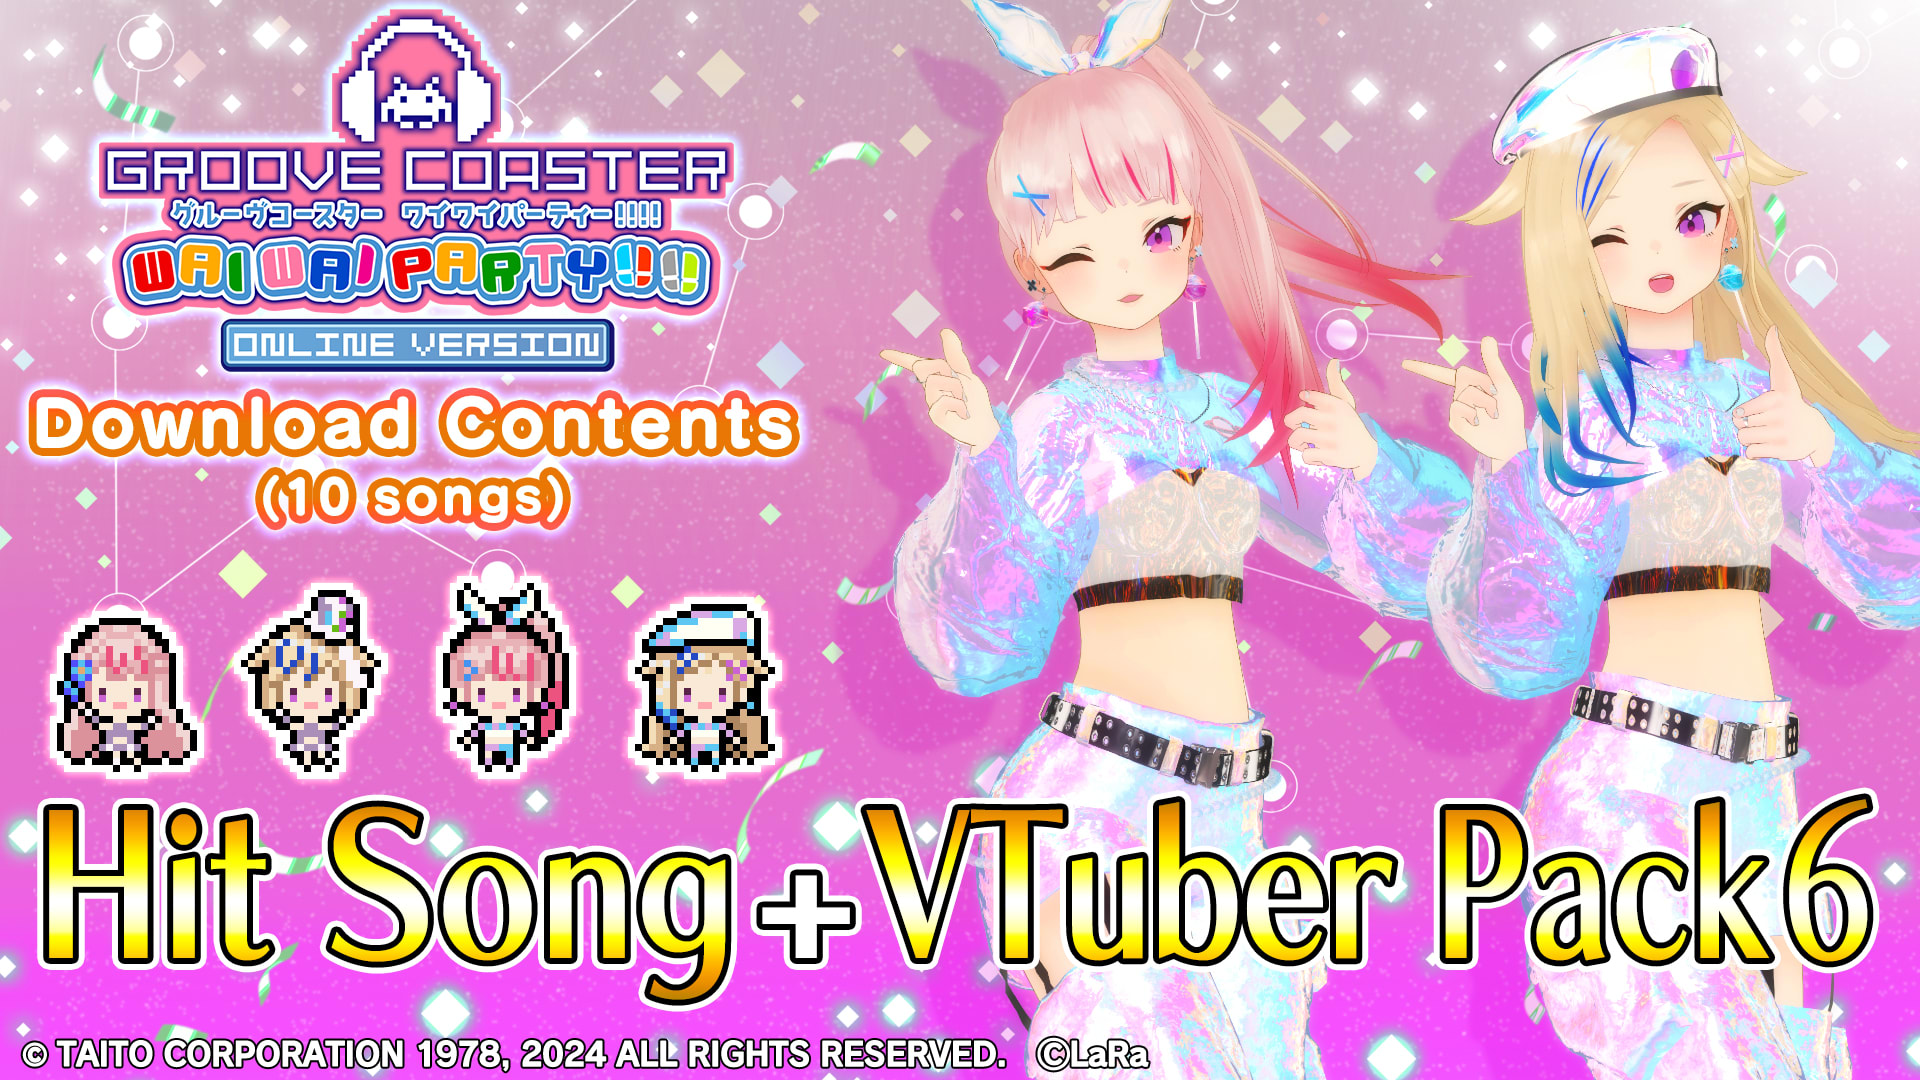 Hit Song + VTuber Pack 6